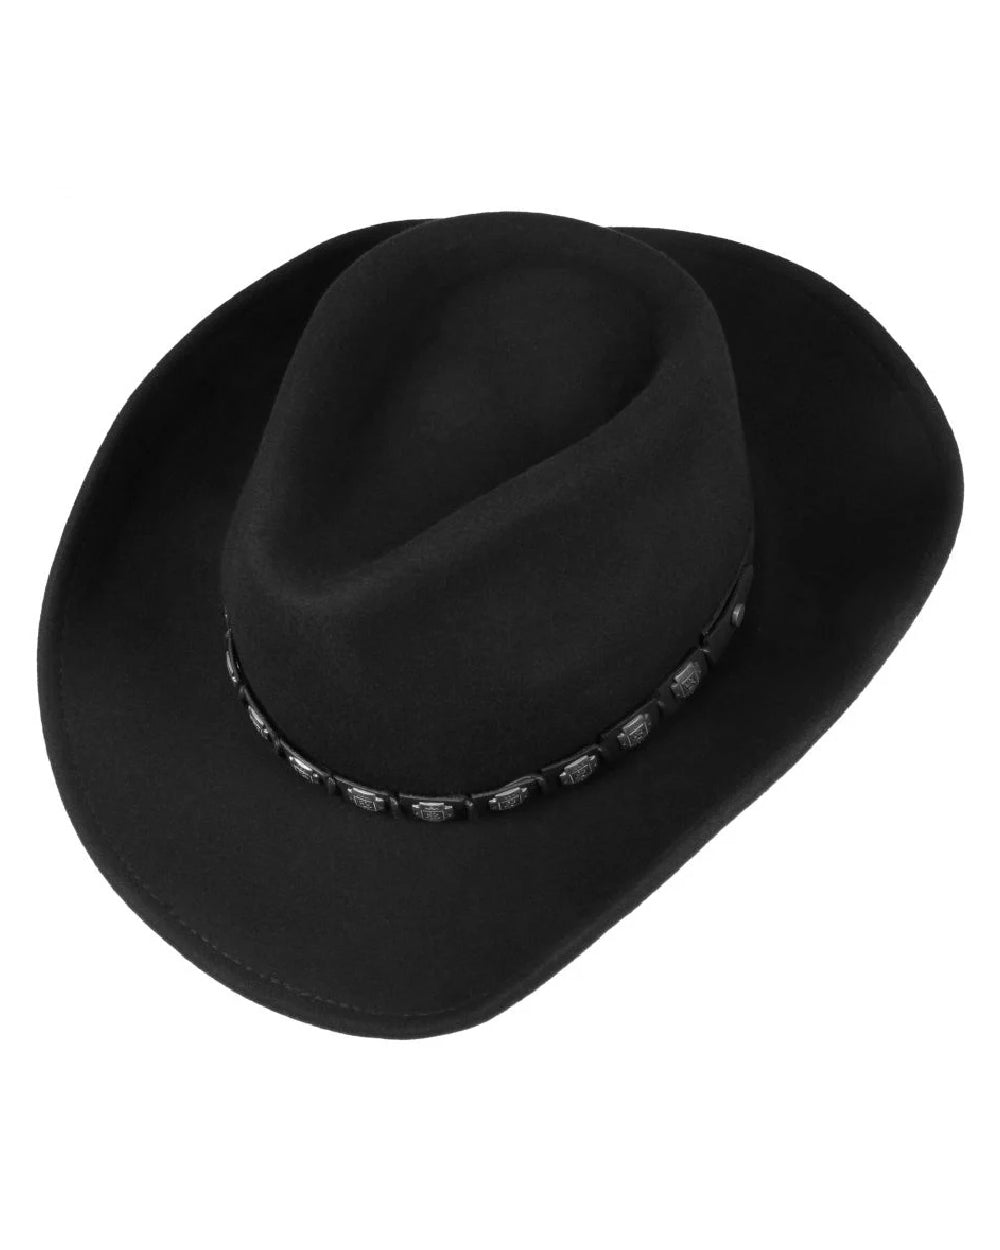 Stetson Hackberry Western Hat in Black 